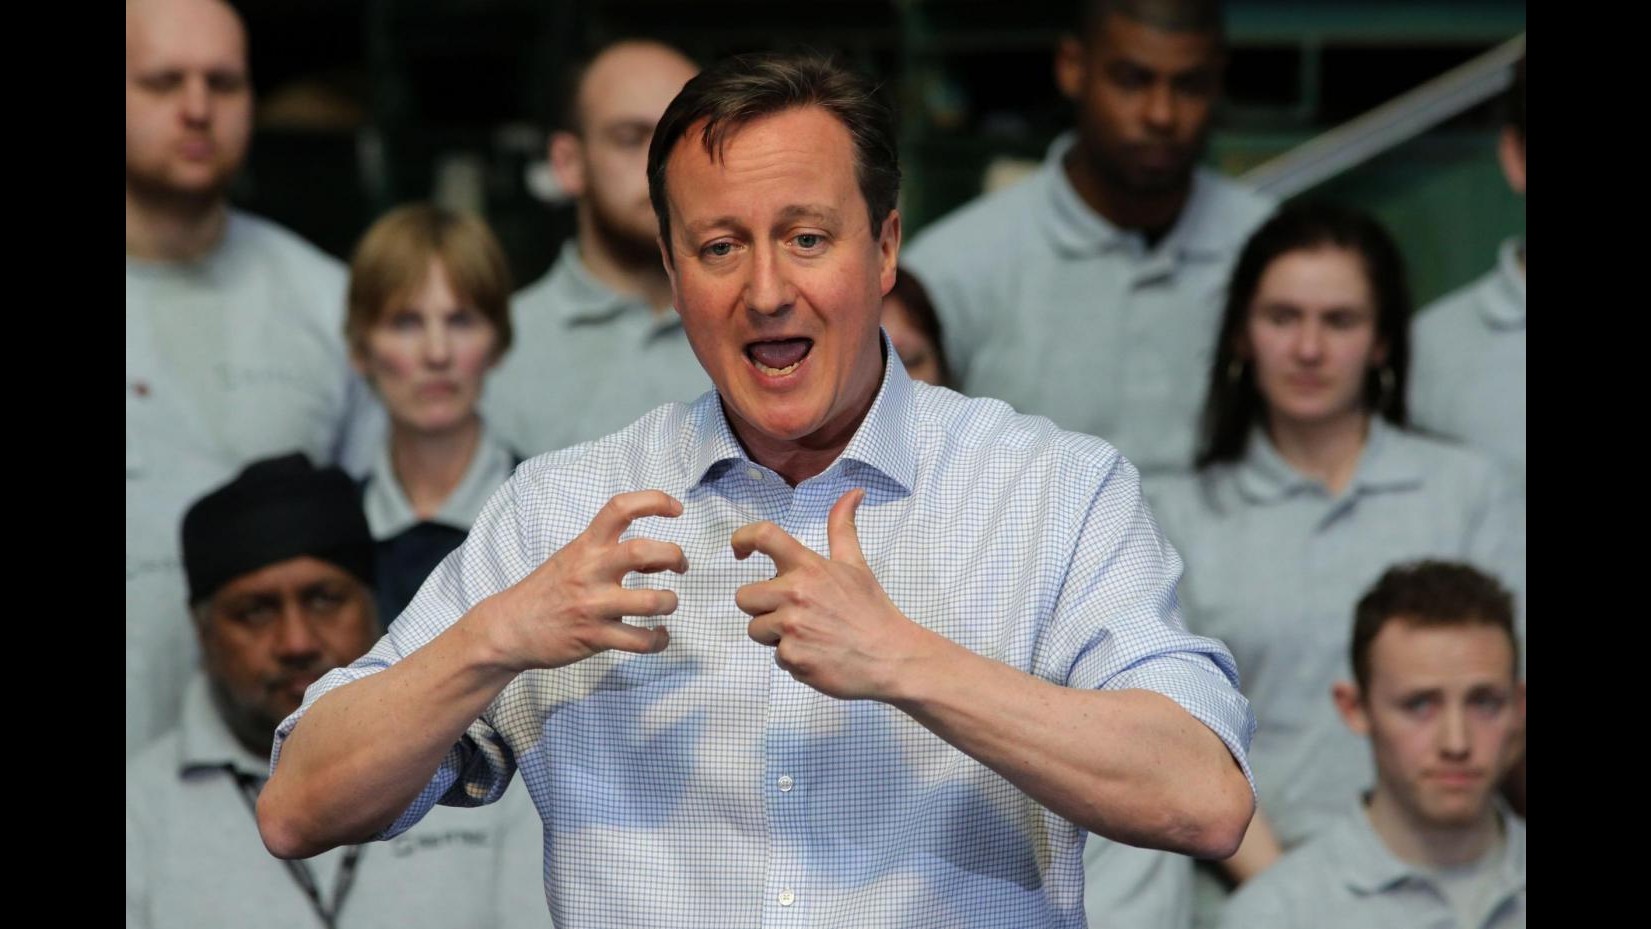 Regno Unito, chi è David Cameron: da welfare a Ue, carriera sul filo